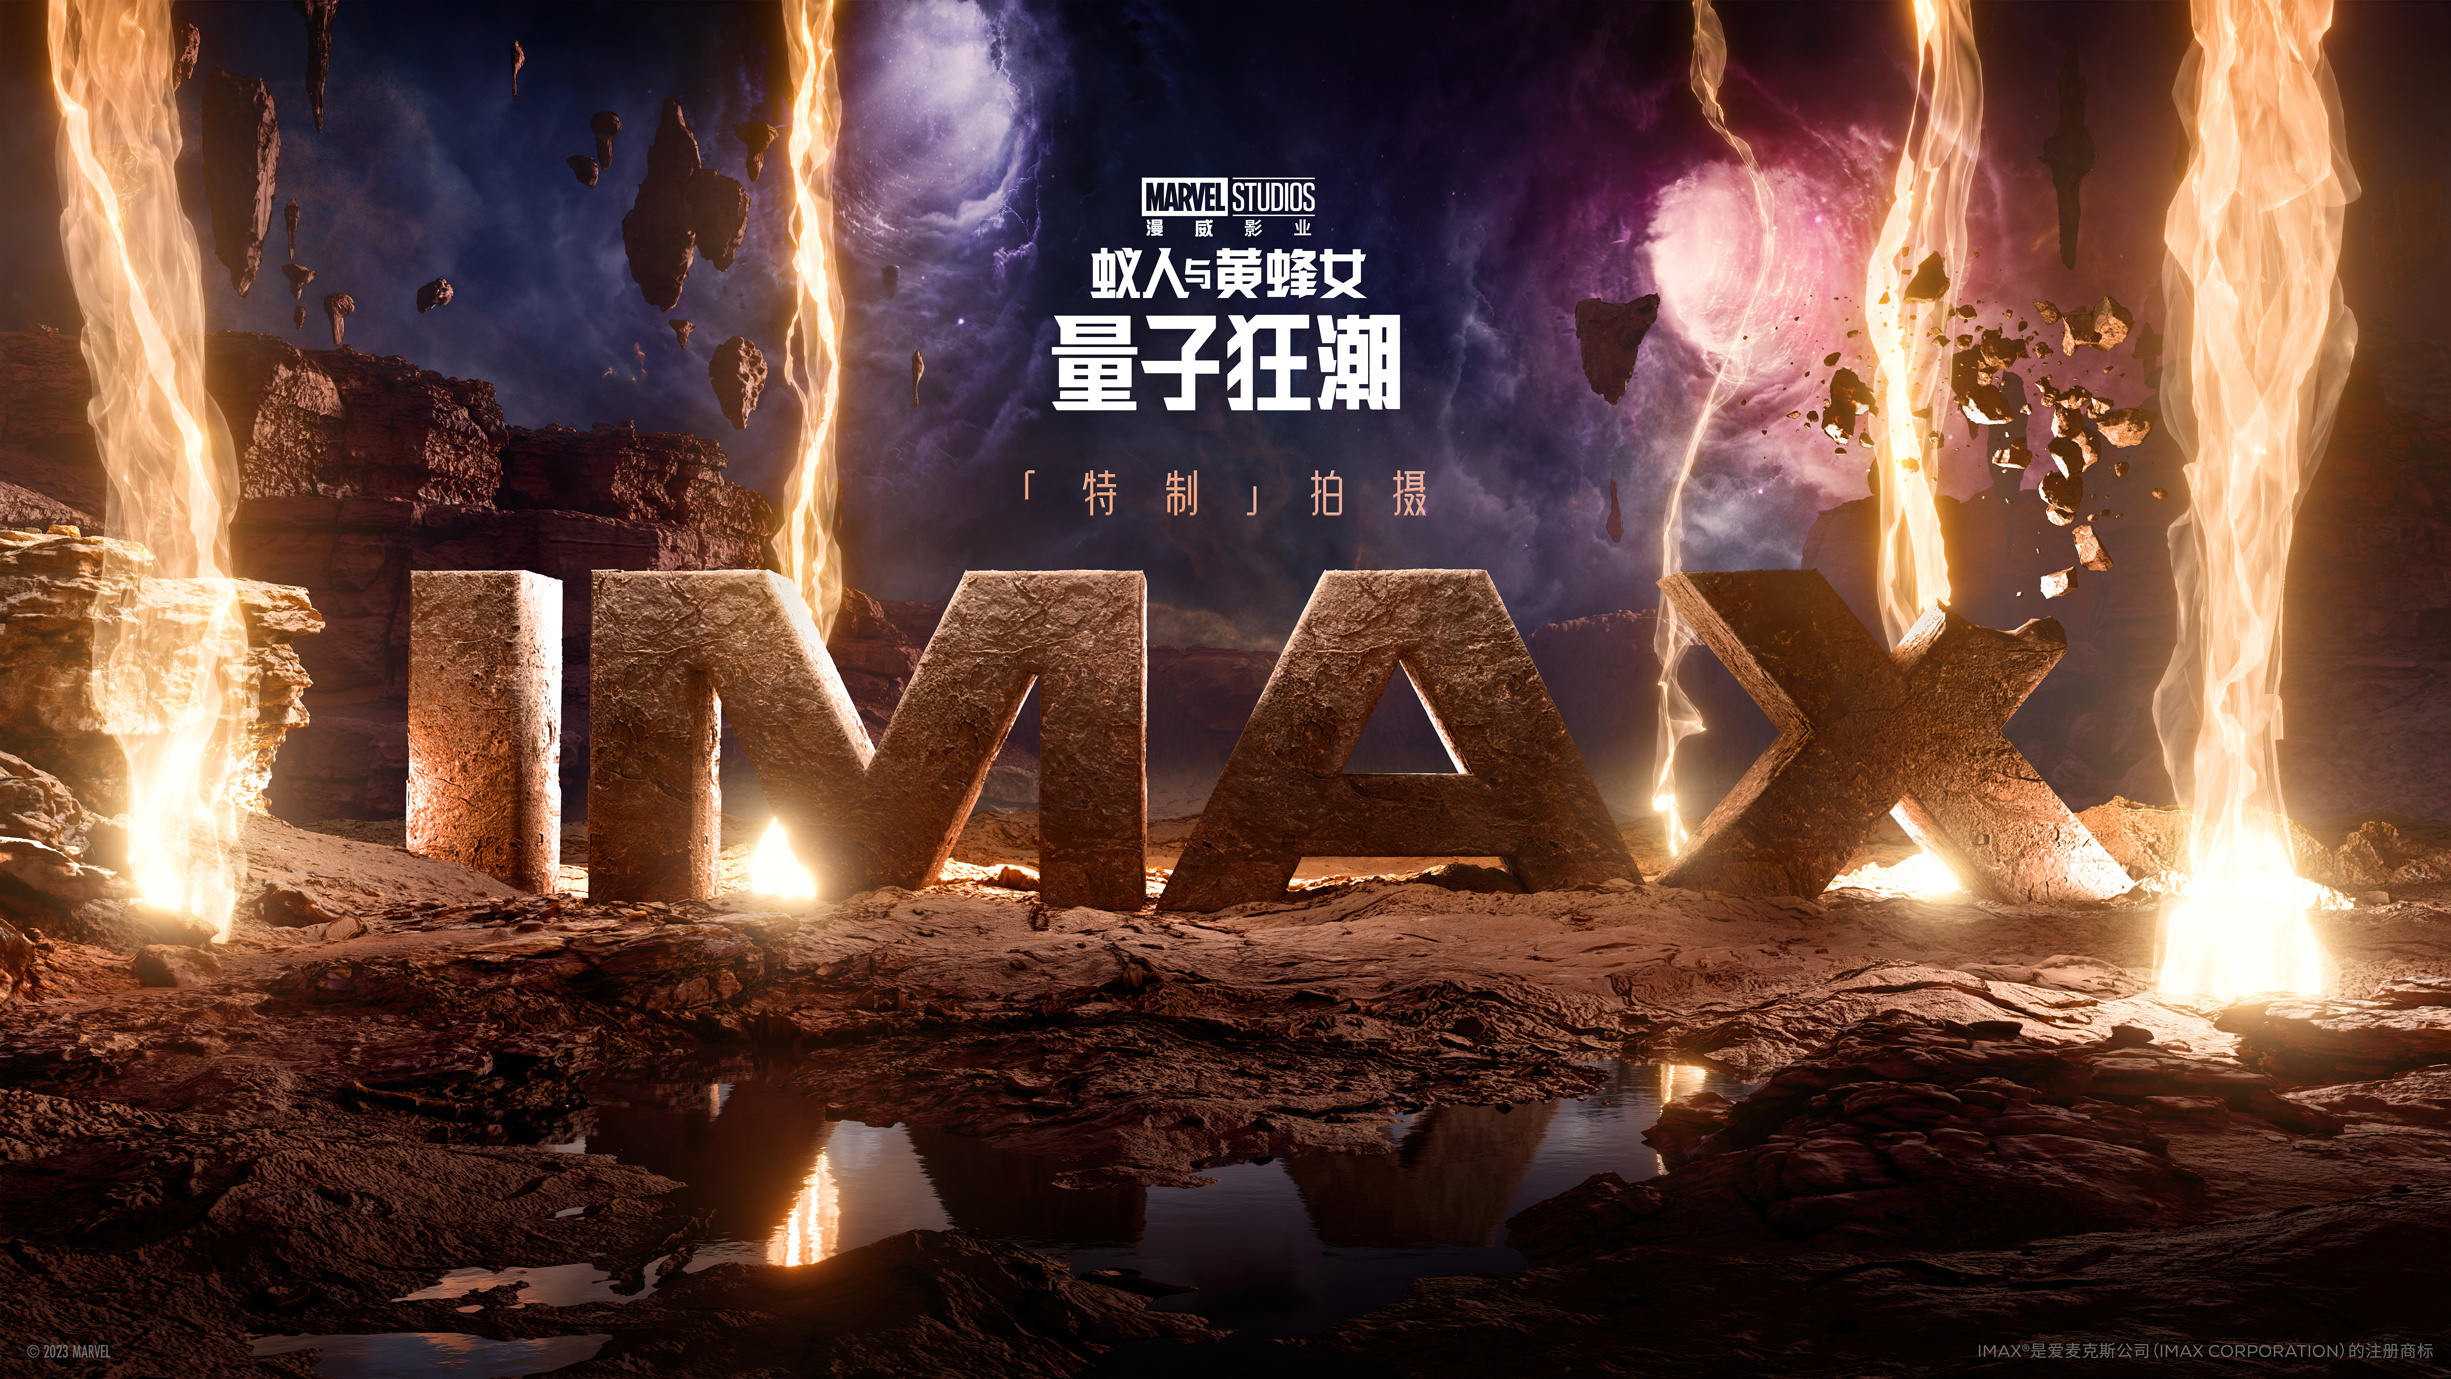 《蚁人与黄蜂女》发布概念视觉 IMAX多26%画面